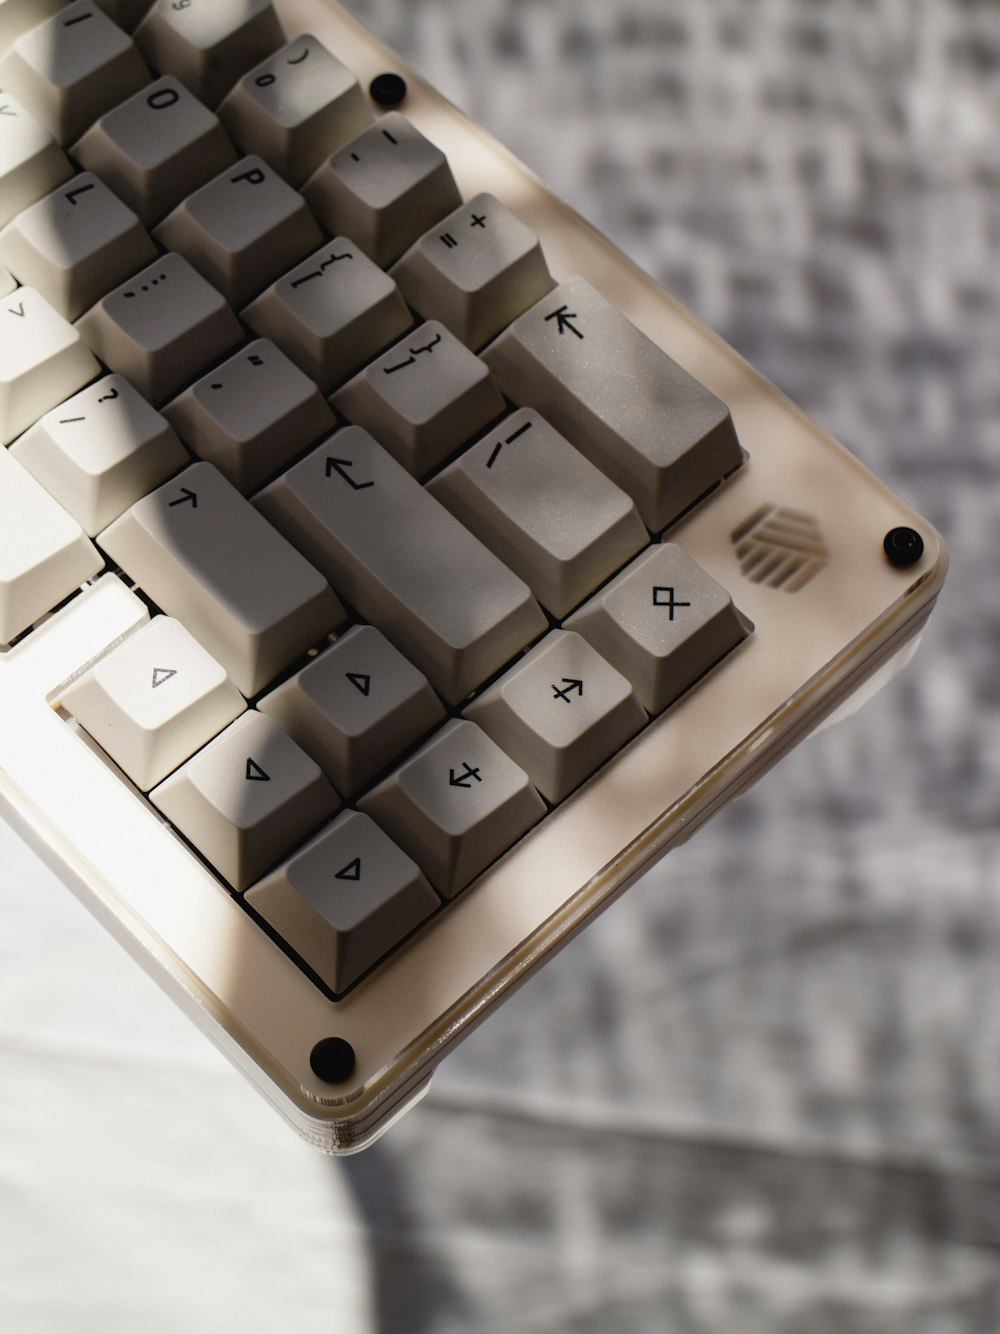 eine weiße Tastatur mit schwarzen Tasten